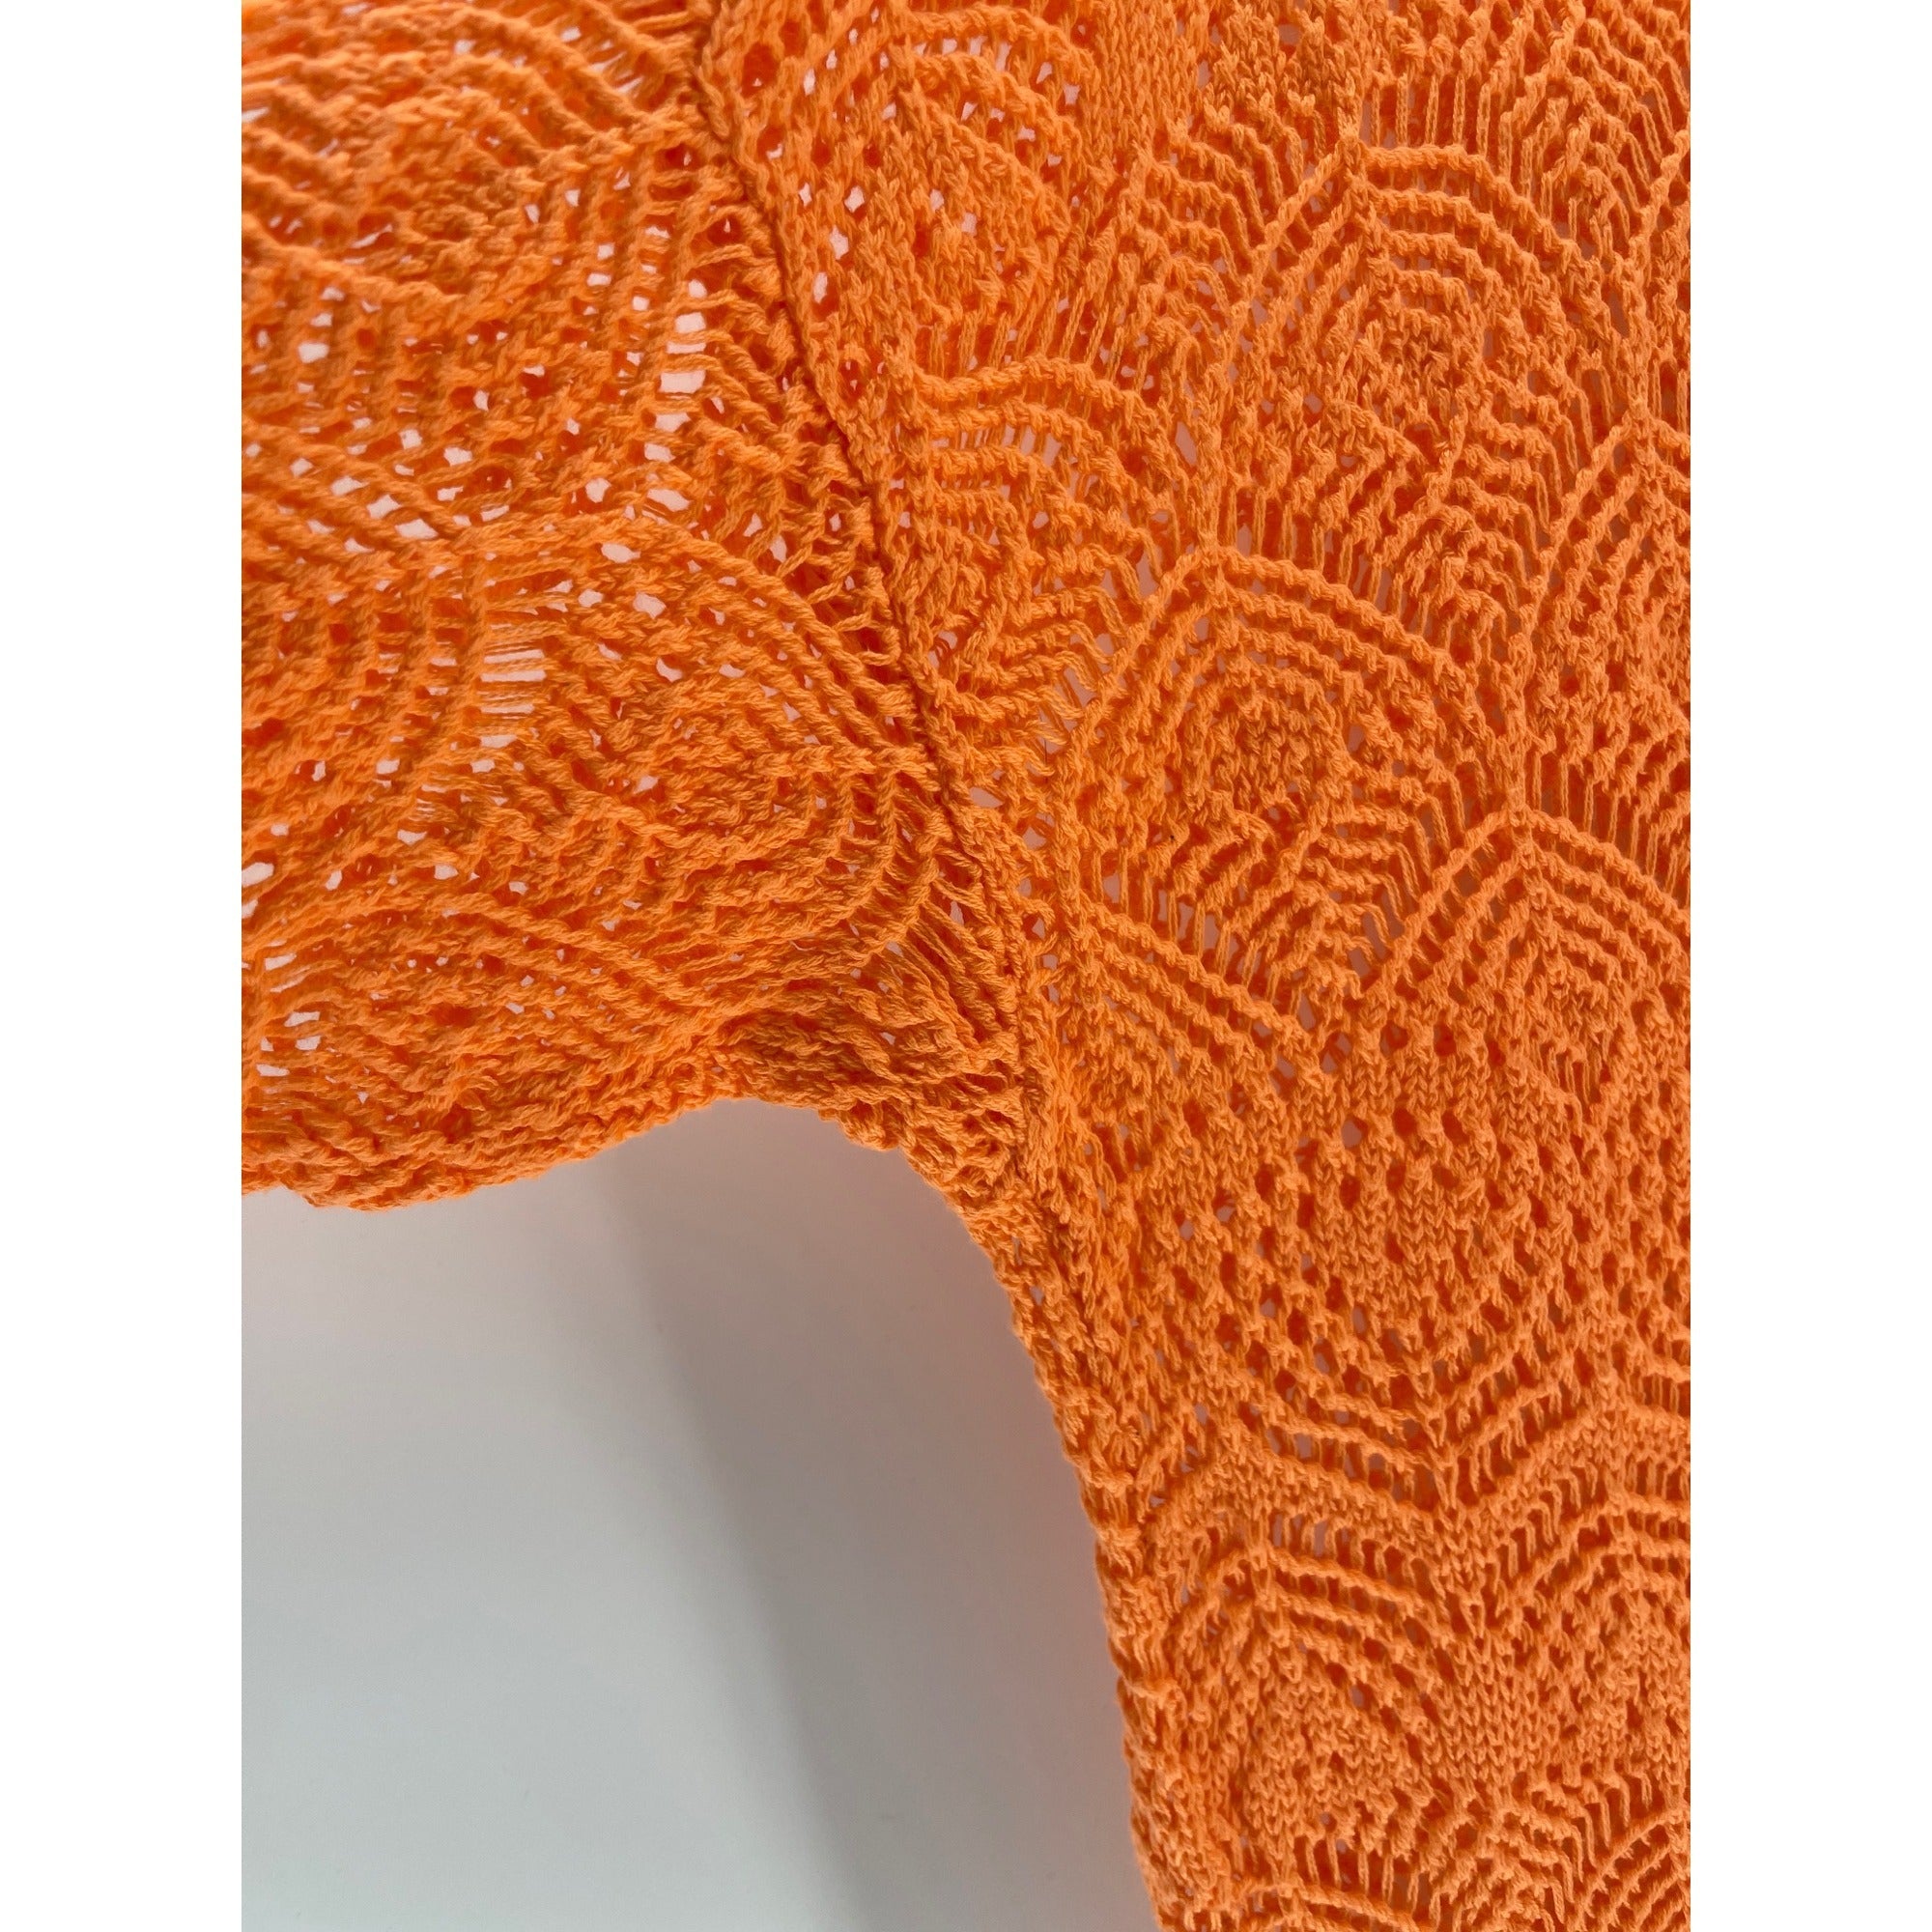 NWOT Jeanne Pierre Women’s XL Sherbet Orange Sheer Knit Cold Shoulder Sweater